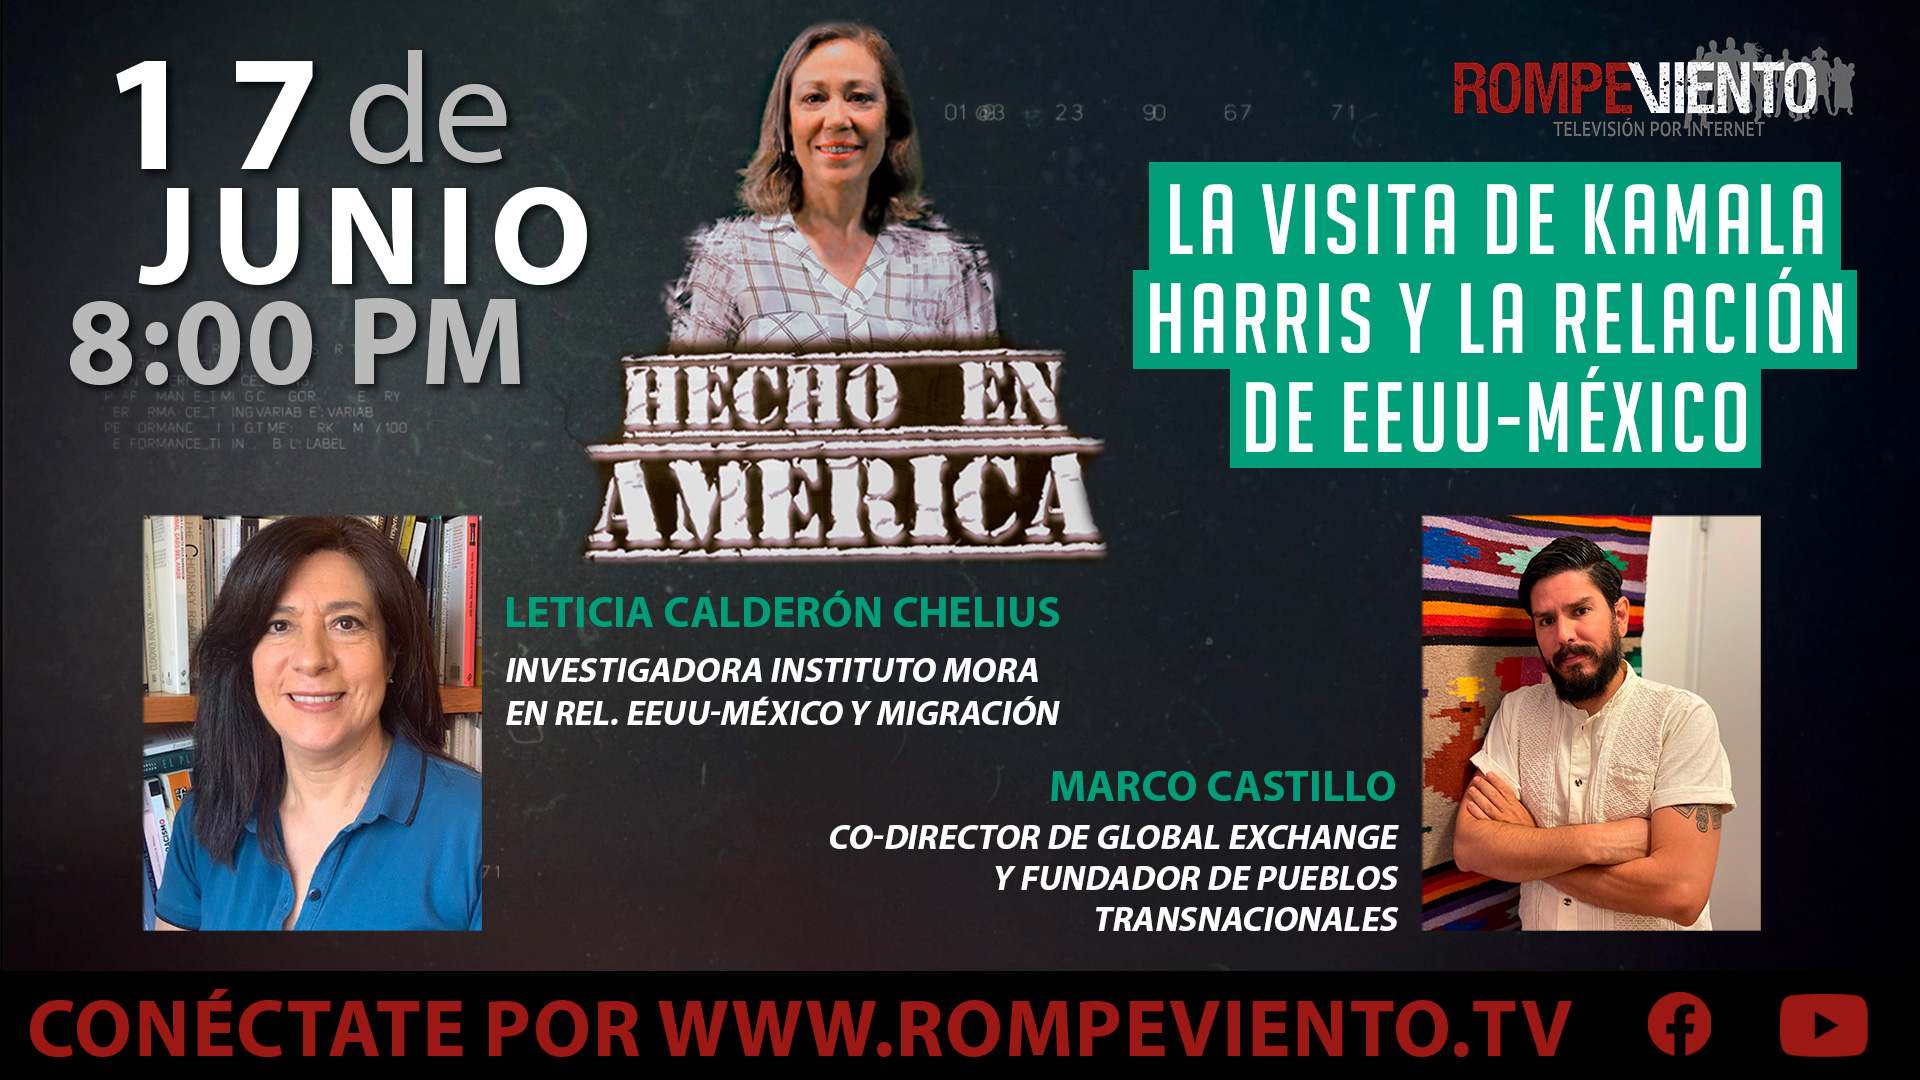 La visita de Kamala Harris y la relación de EEUU-México - Hecho en América